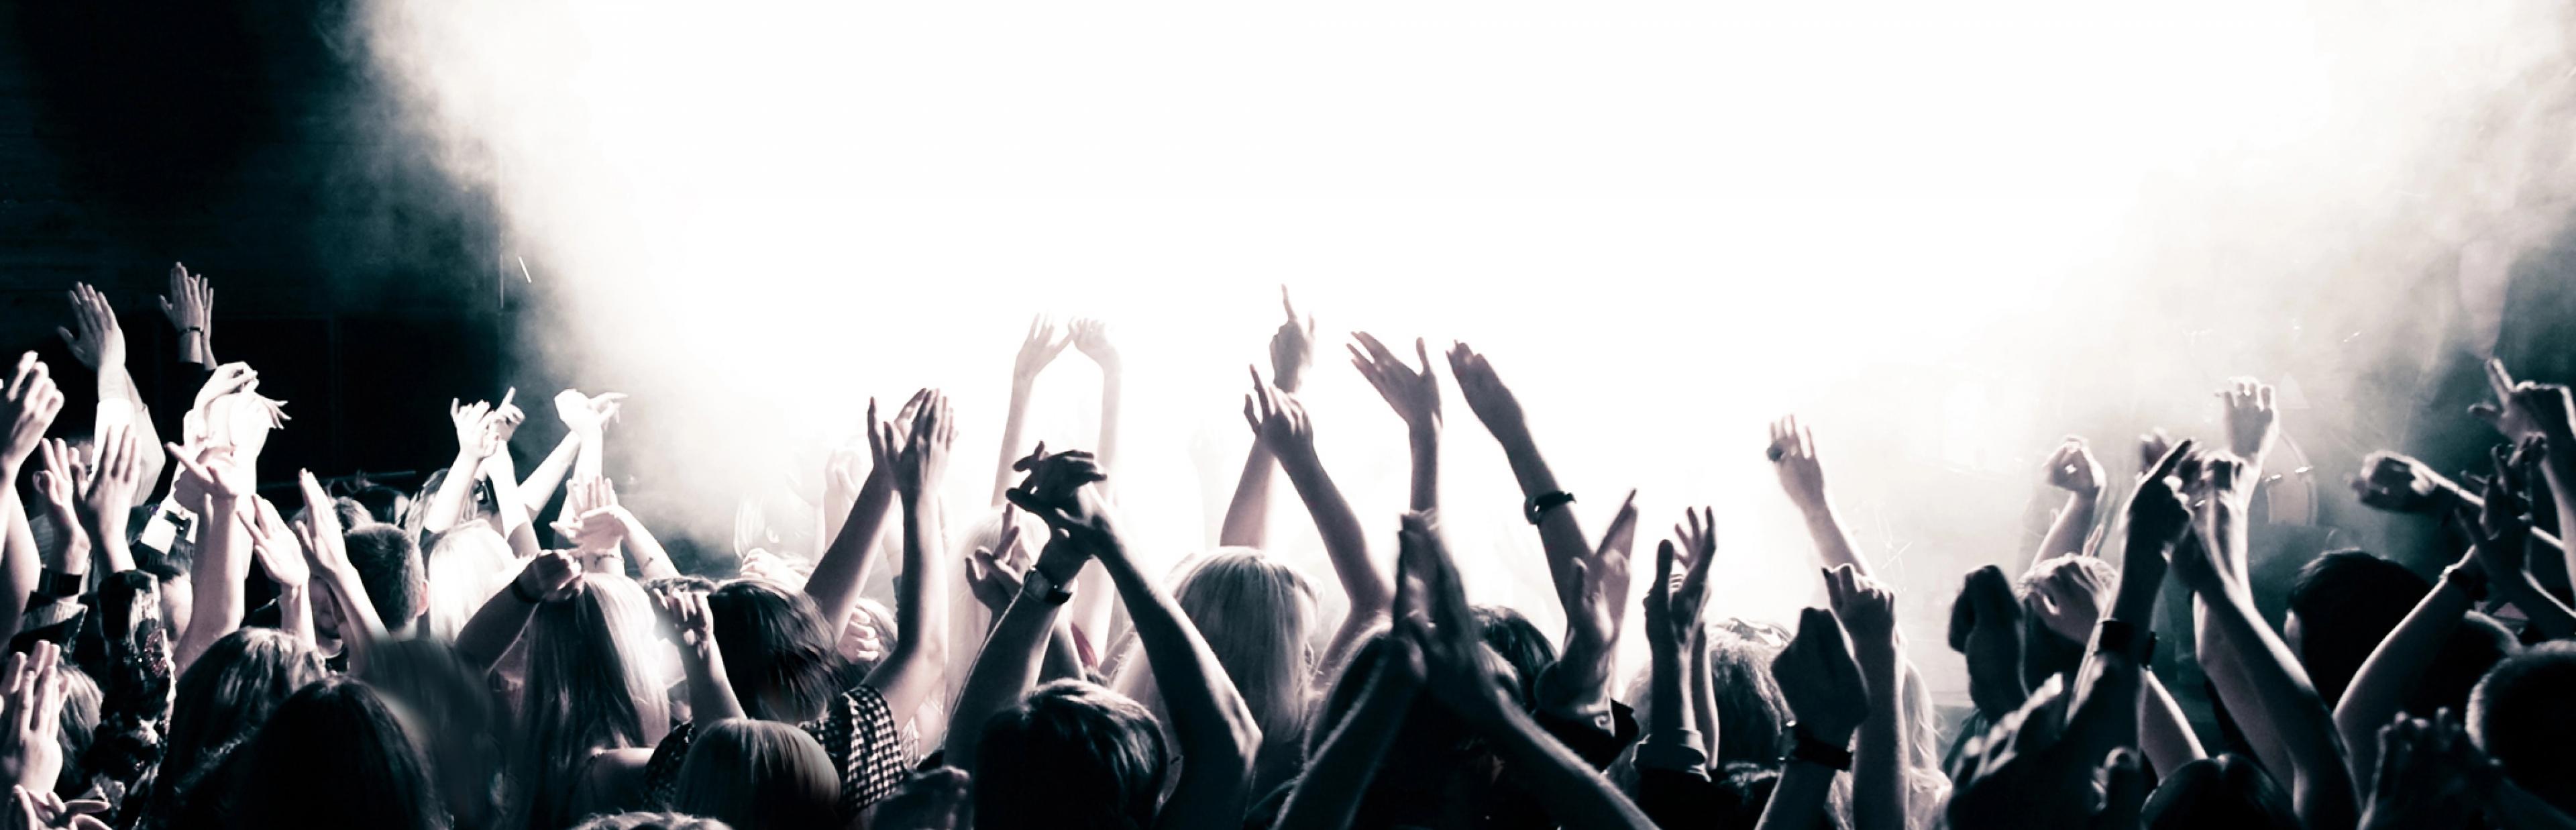 Das Schwarz-Weiß-Foto zeigt die Silhouetten eine Menge junger Menschen, die während einer Musikveranstaltung in einem Saal enthusiastisch tanzen und die Arme hochrecken – im Hintergrund eine gleißend helle, von Scheinwerfern angeleuchtete Nebelblase.